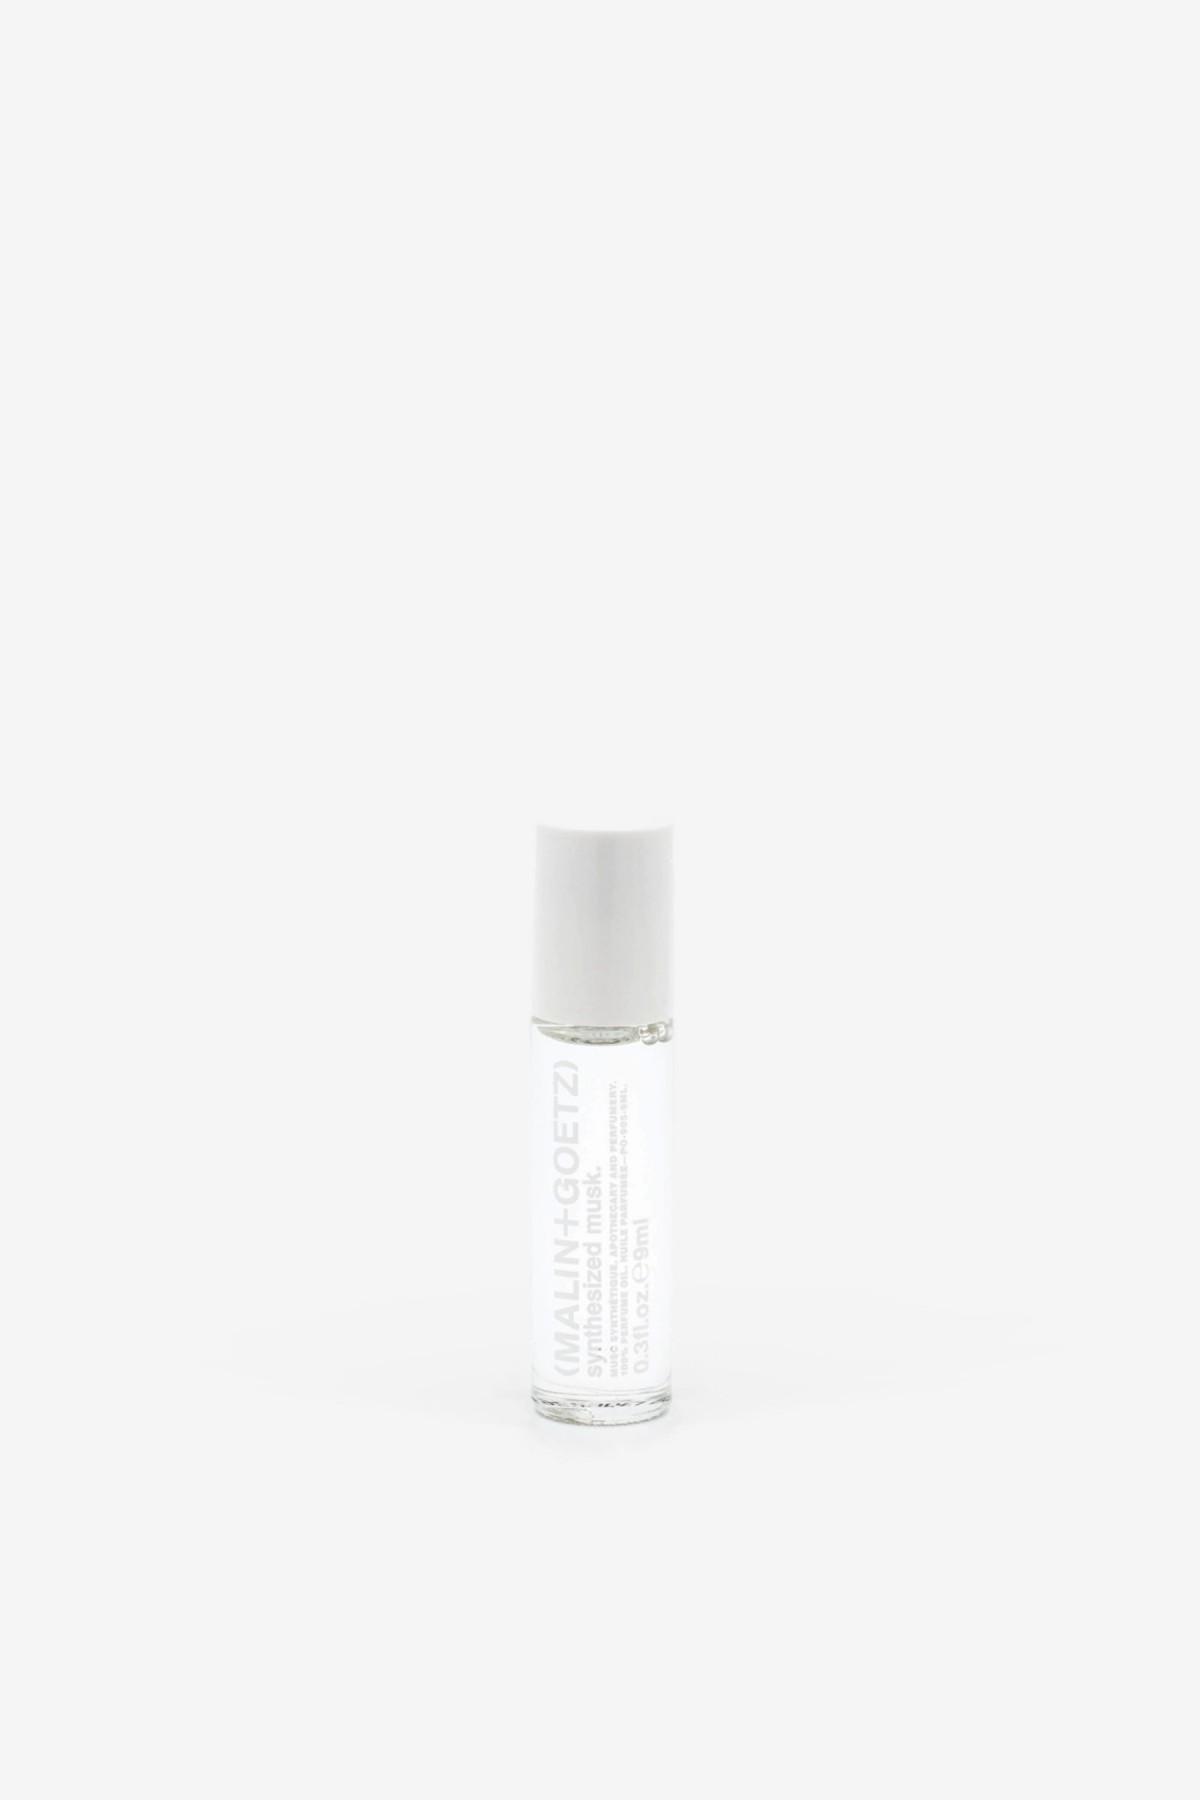 Malin+Goetz Synthesized Musk Parfume Oil 9ml in 